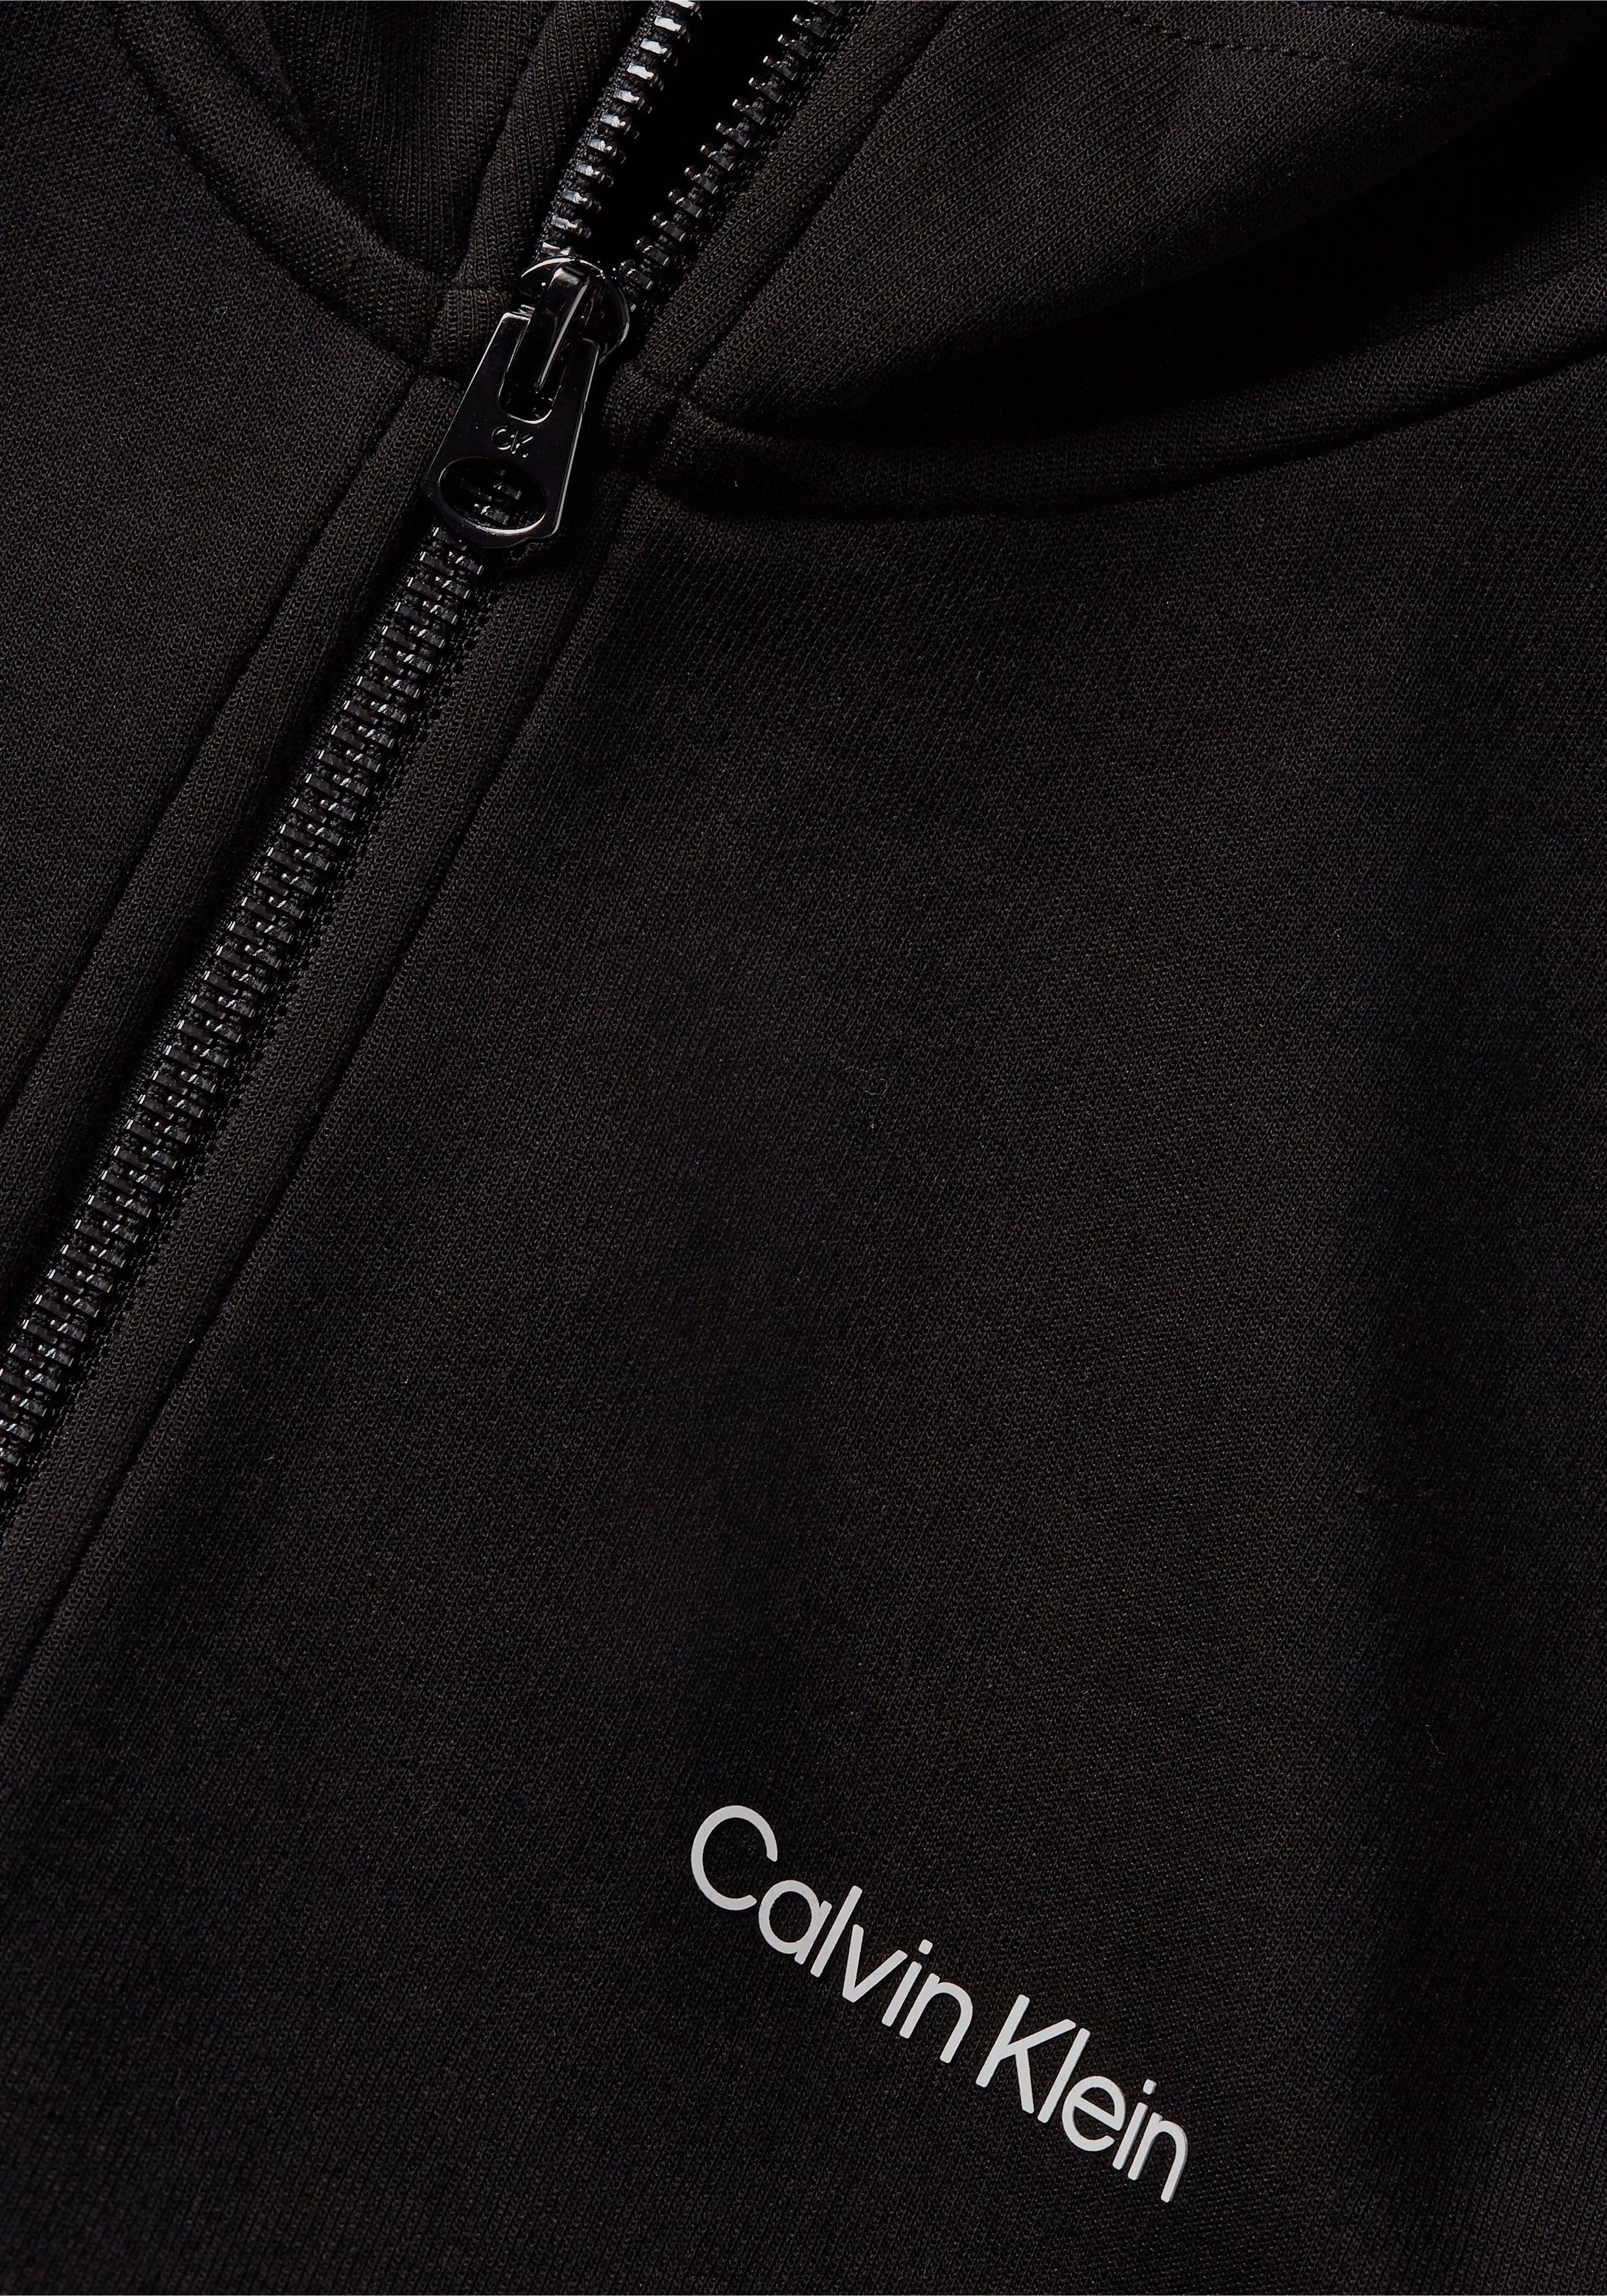 Kapuzensweatjacke mit Kapuze im Calvin schwarz Klein Design hochgeschlossenen